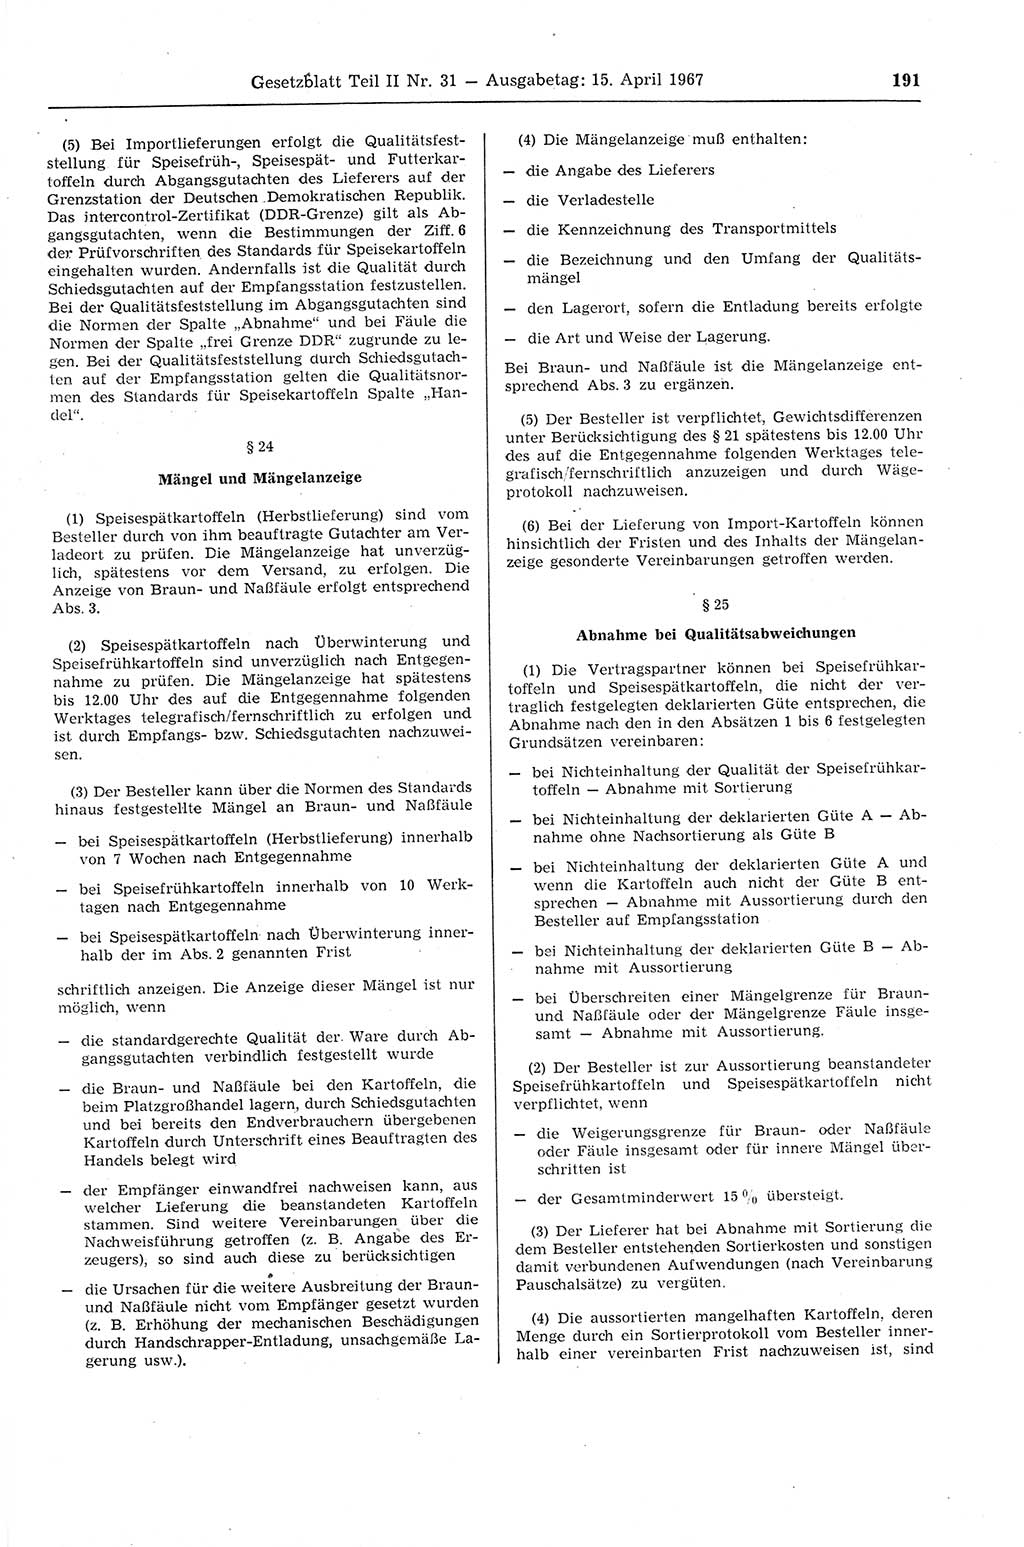 Gesetzblatt (GBl.) der Deutschen Demokratischen Republik (DDR) Teil ⅠⅠ 1967, Seite 191 (GBl. DDR ⅠⅠ 1967, S. 191)